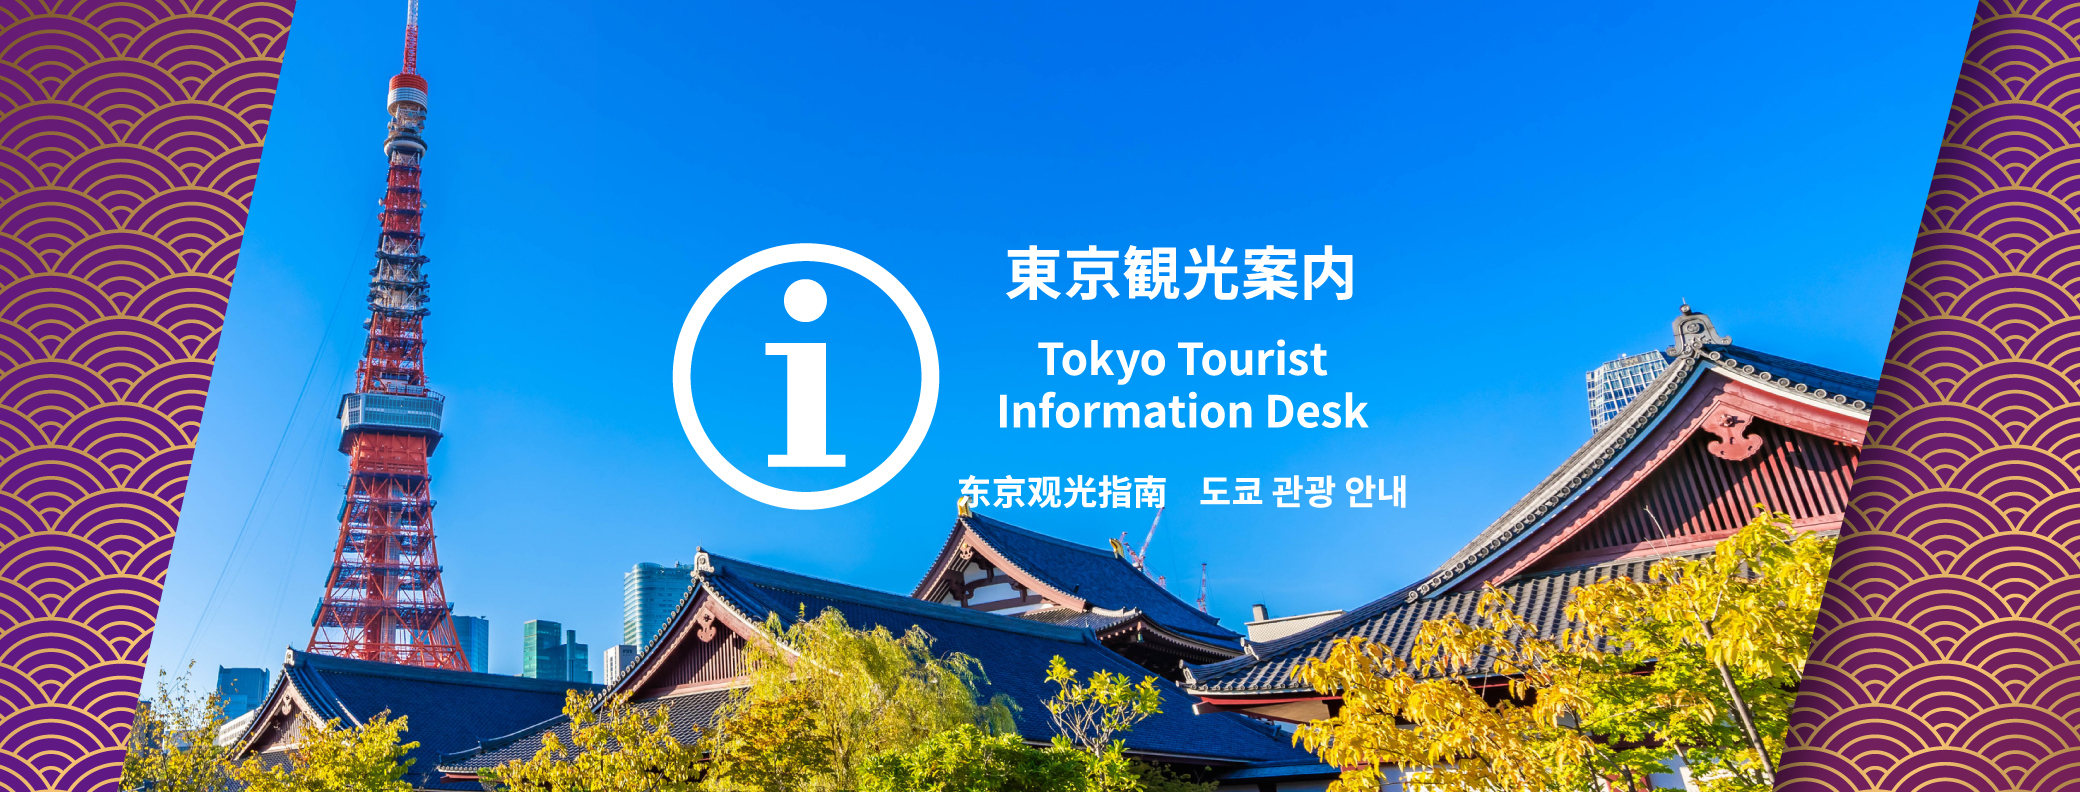 Tokyo Tourist Information Desk